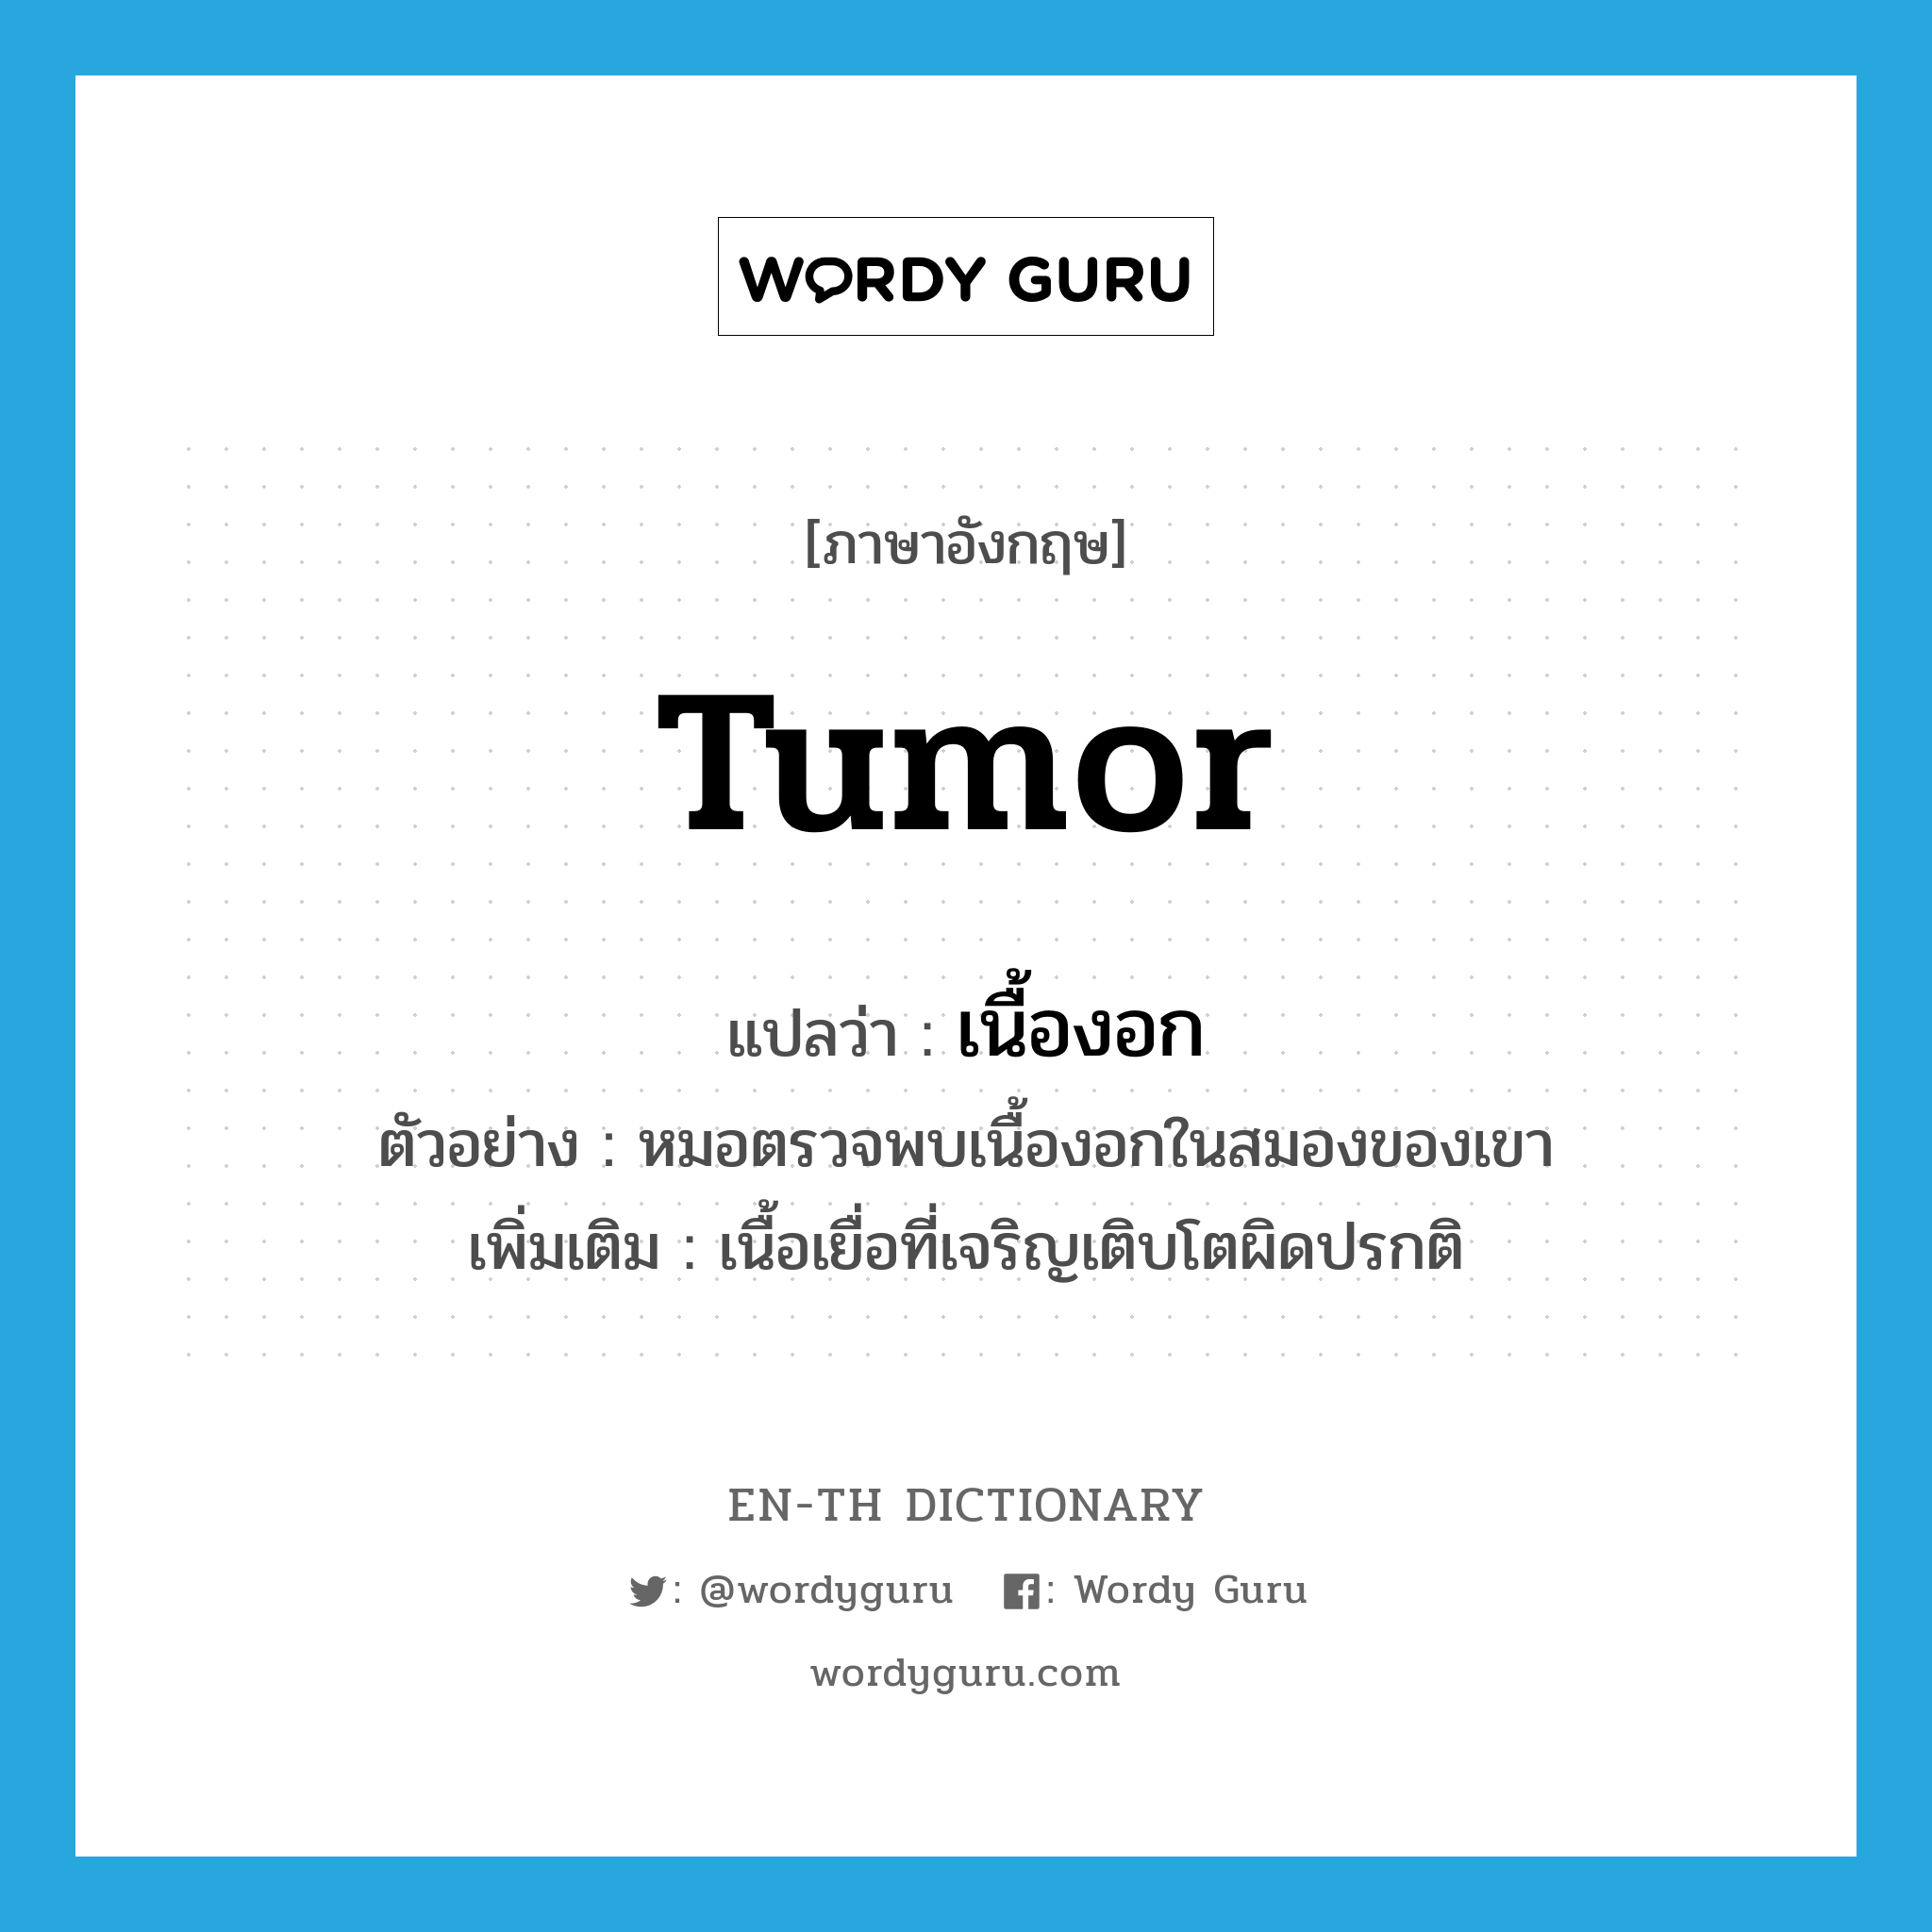 tumor แปลว่า?, คำศัพท์ภาษาอังกฤษ tumor แปลว่า เนื้องอก ประเภท N ตัวอย่าง หมอตรวจพบเนื้องอกในสมองของเขา เพิ่มเติม เนื้อเยื่อที่เจริญเติบโตผิดปรกติ หมวด N